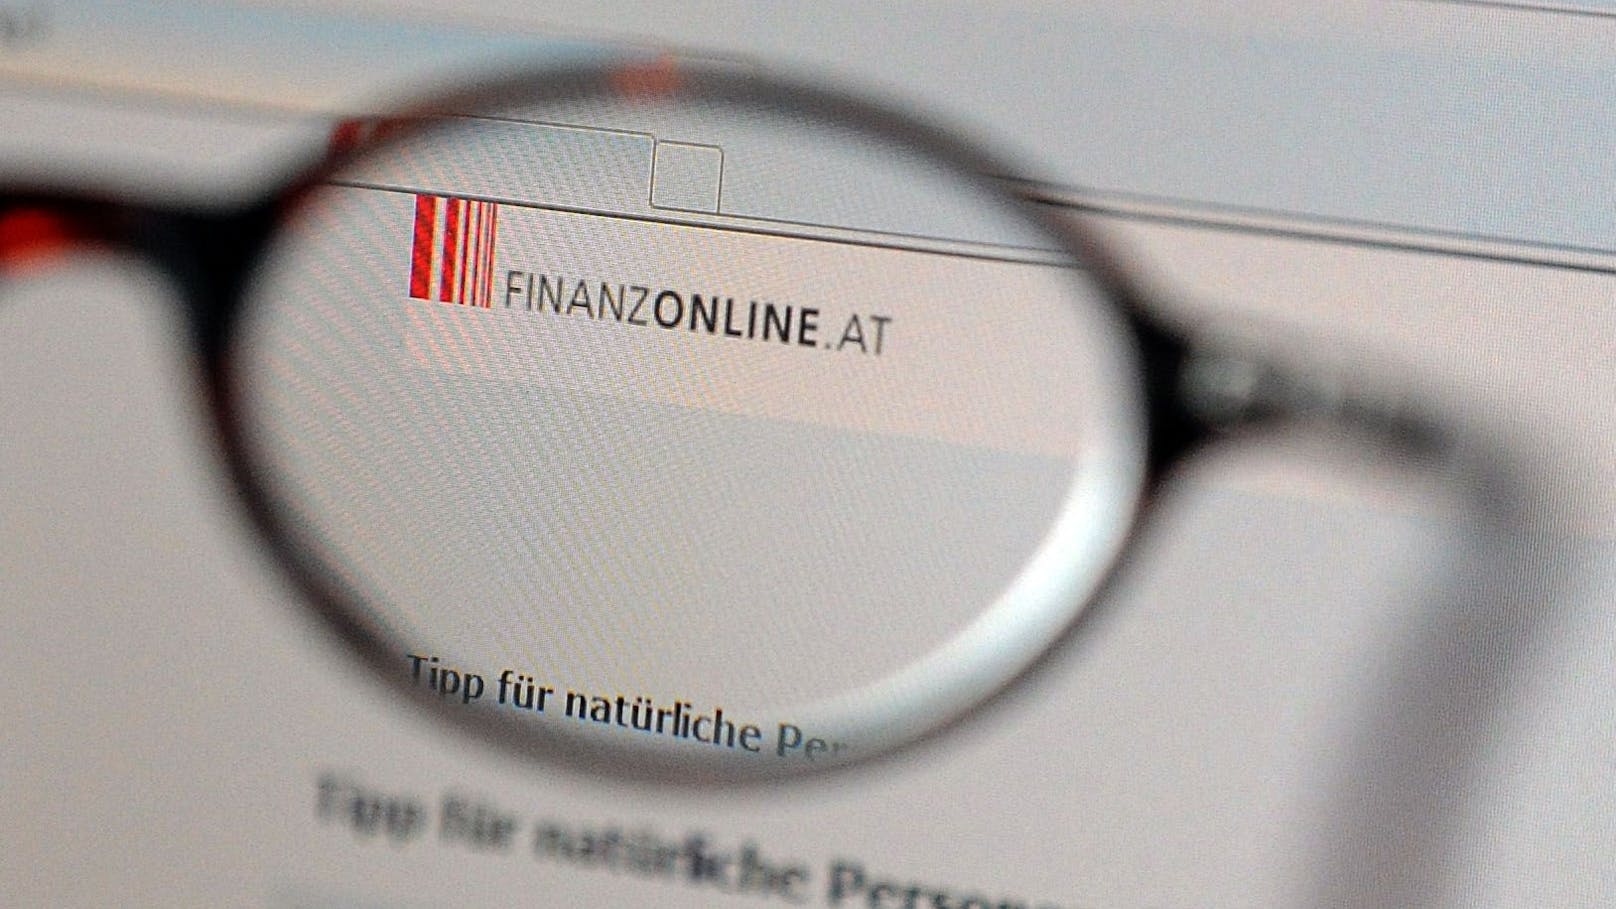 SMS von "Finanz Online" – dann sind Tausende Euro weg